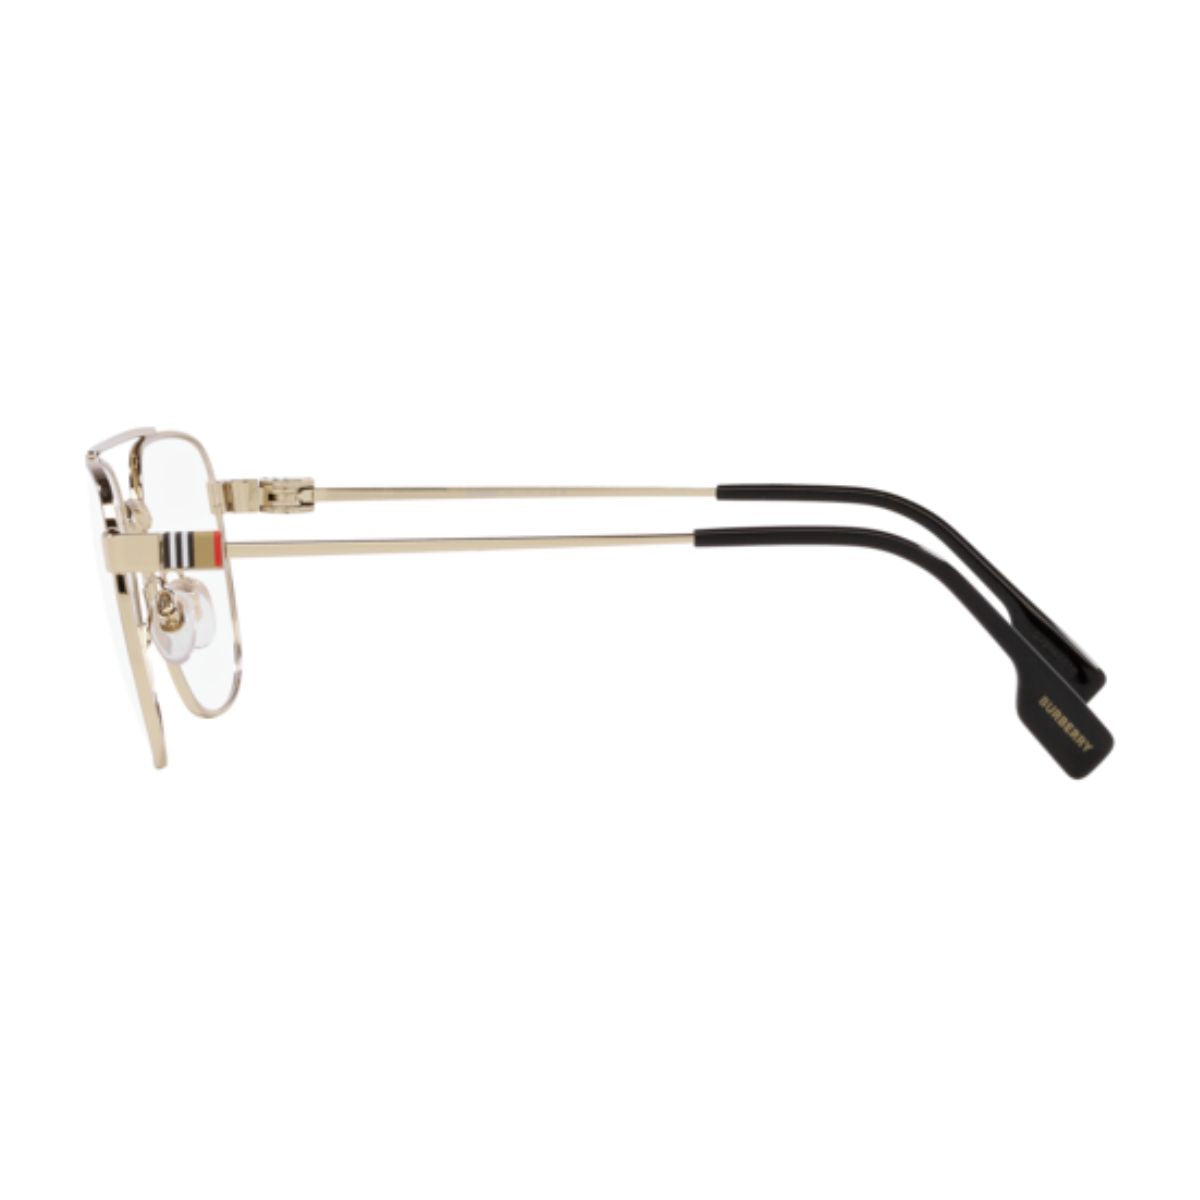 "stylish burberry 1377 1109 eyeglasses & eyesight glasses frame for men's at optorium"